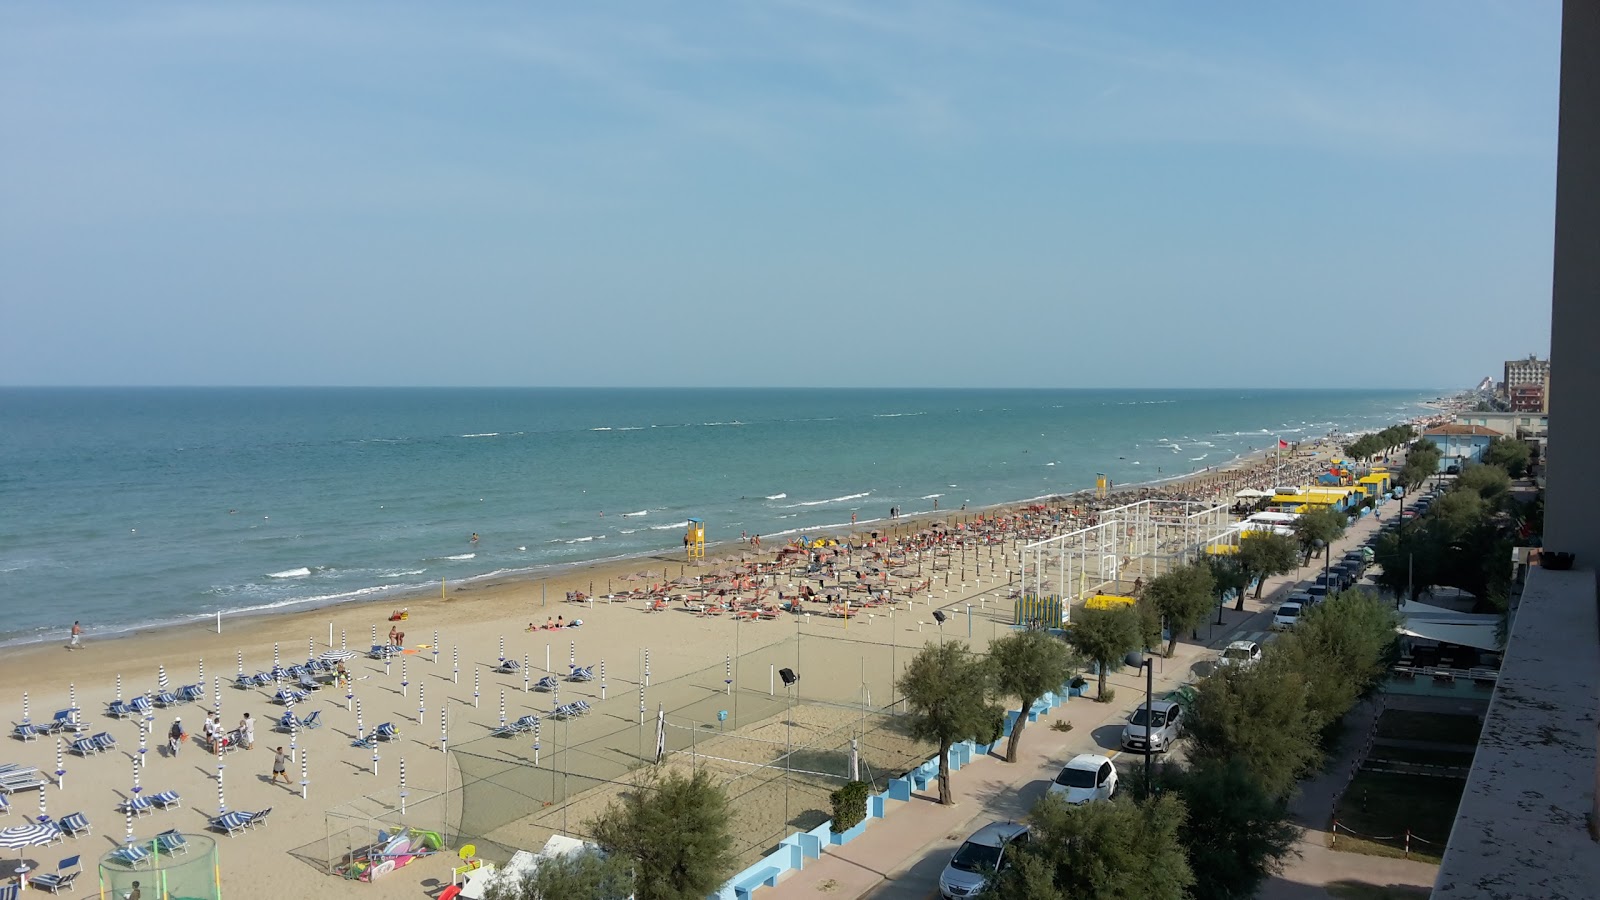 Marotta beach'in fotoğrafı plaj tatil beldesi alanı